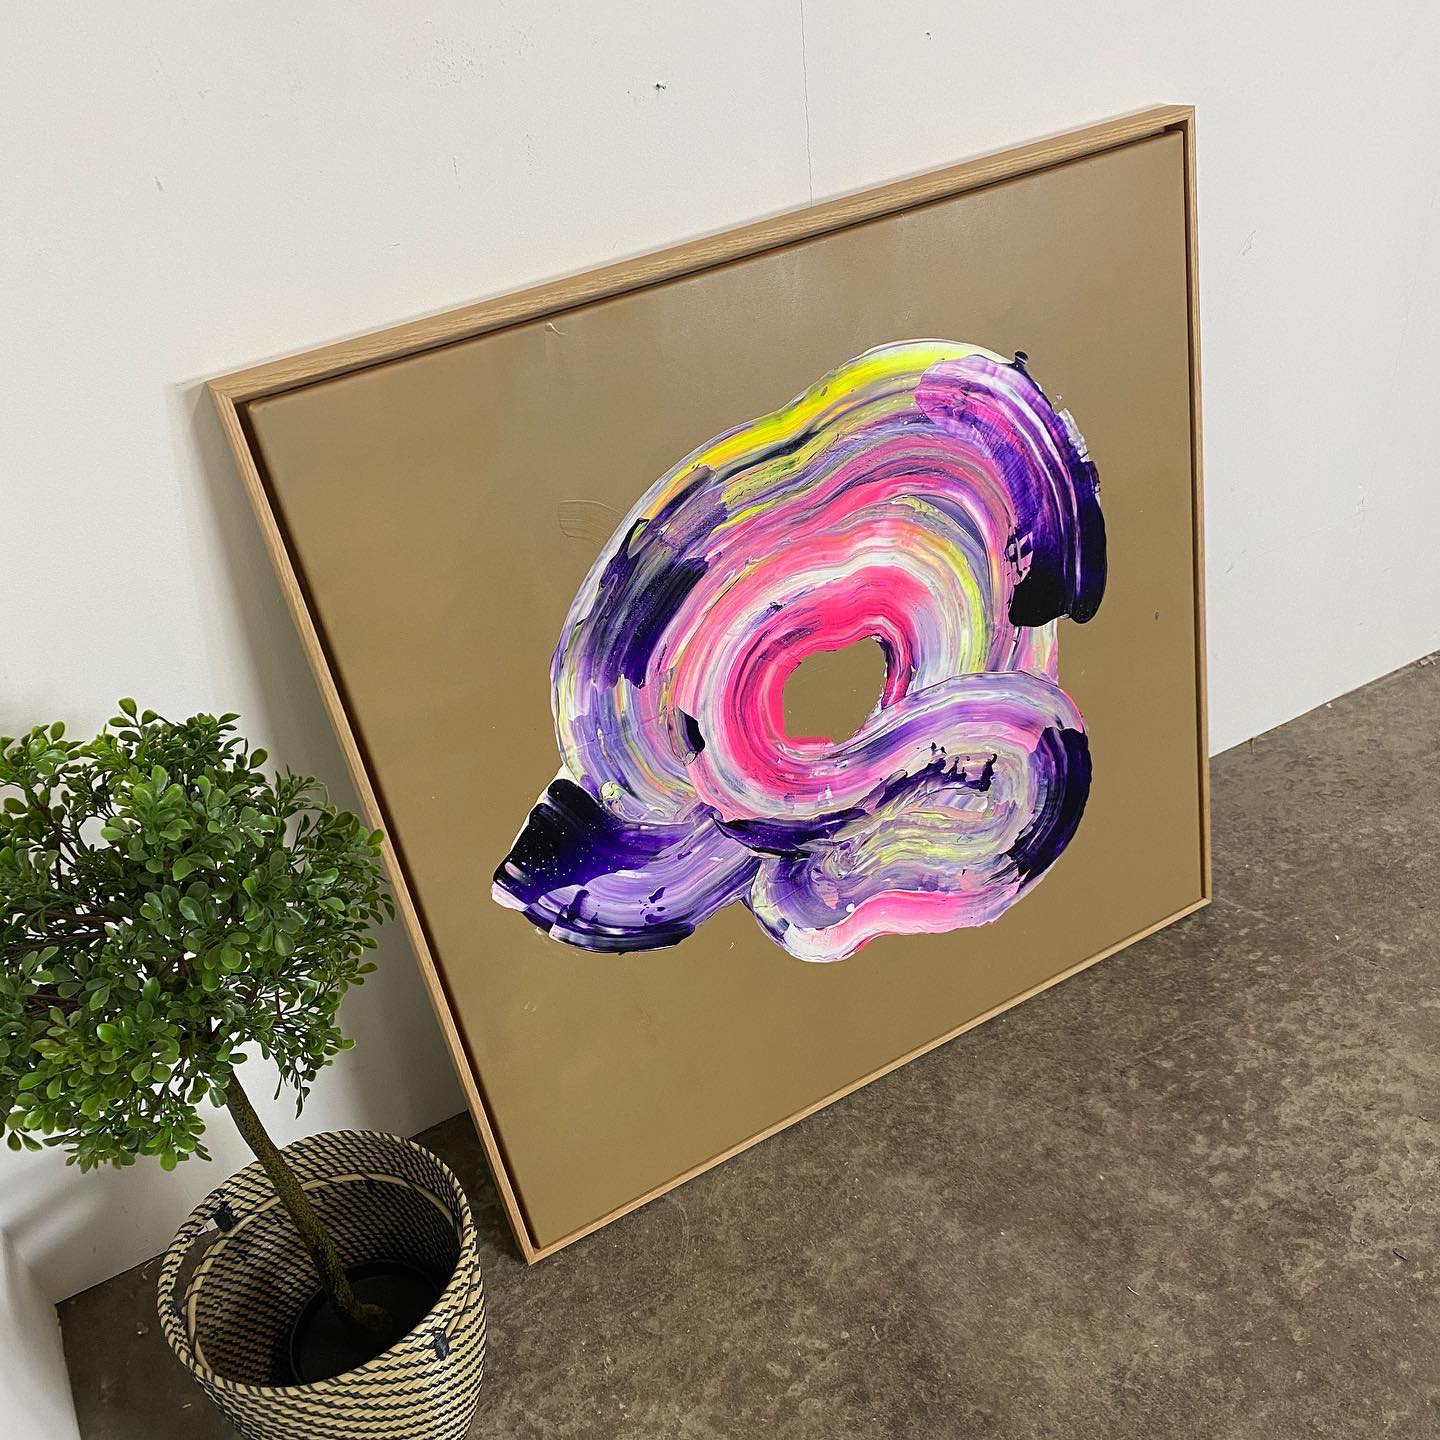 Painting: "Minds #1" 105 x 105 cm